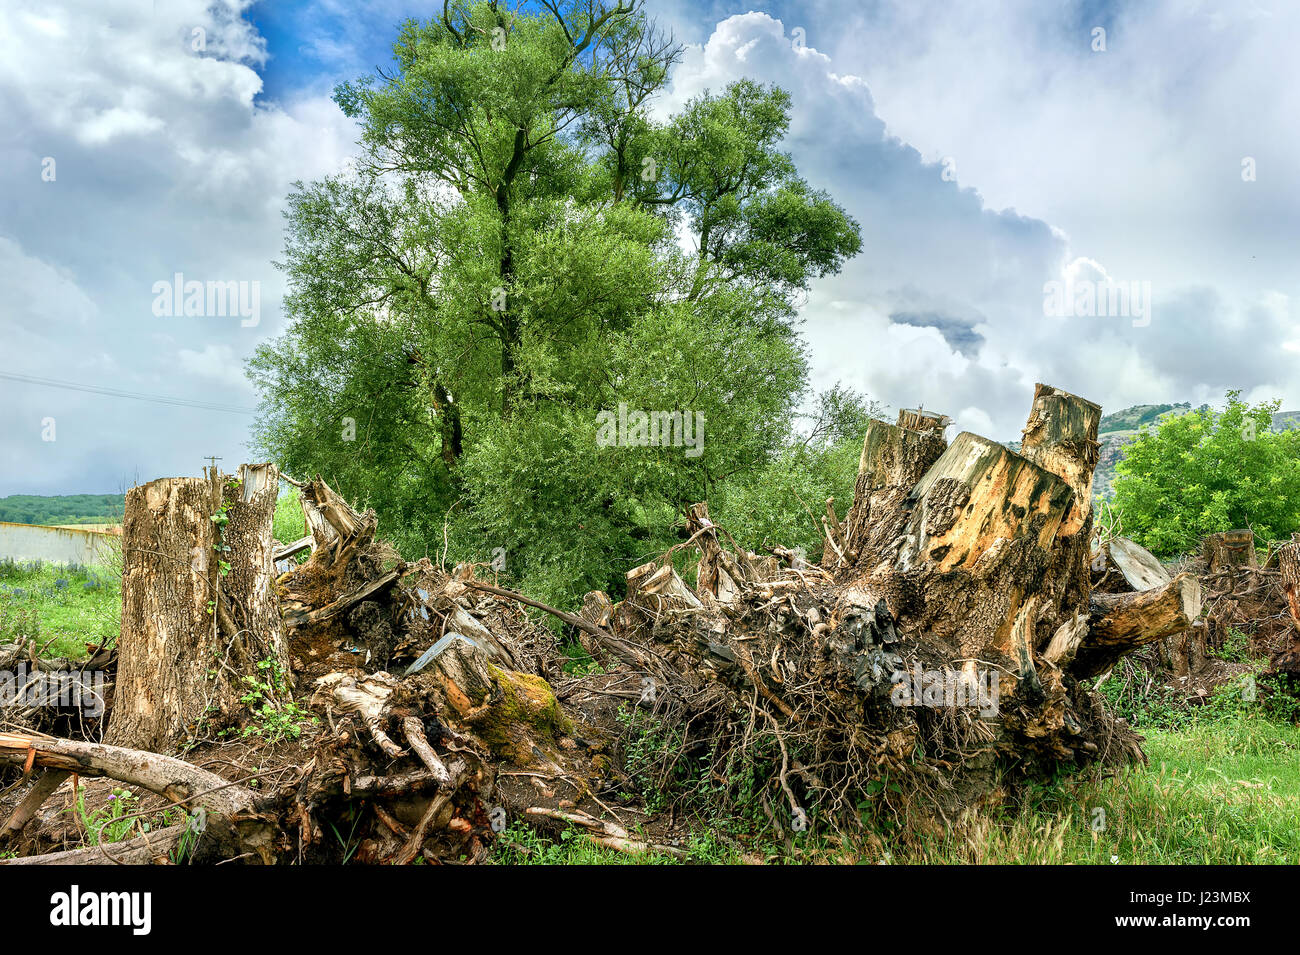 Paysage avec de vieilles racines et sain arbre vert. Ecology concept Banque D'Images